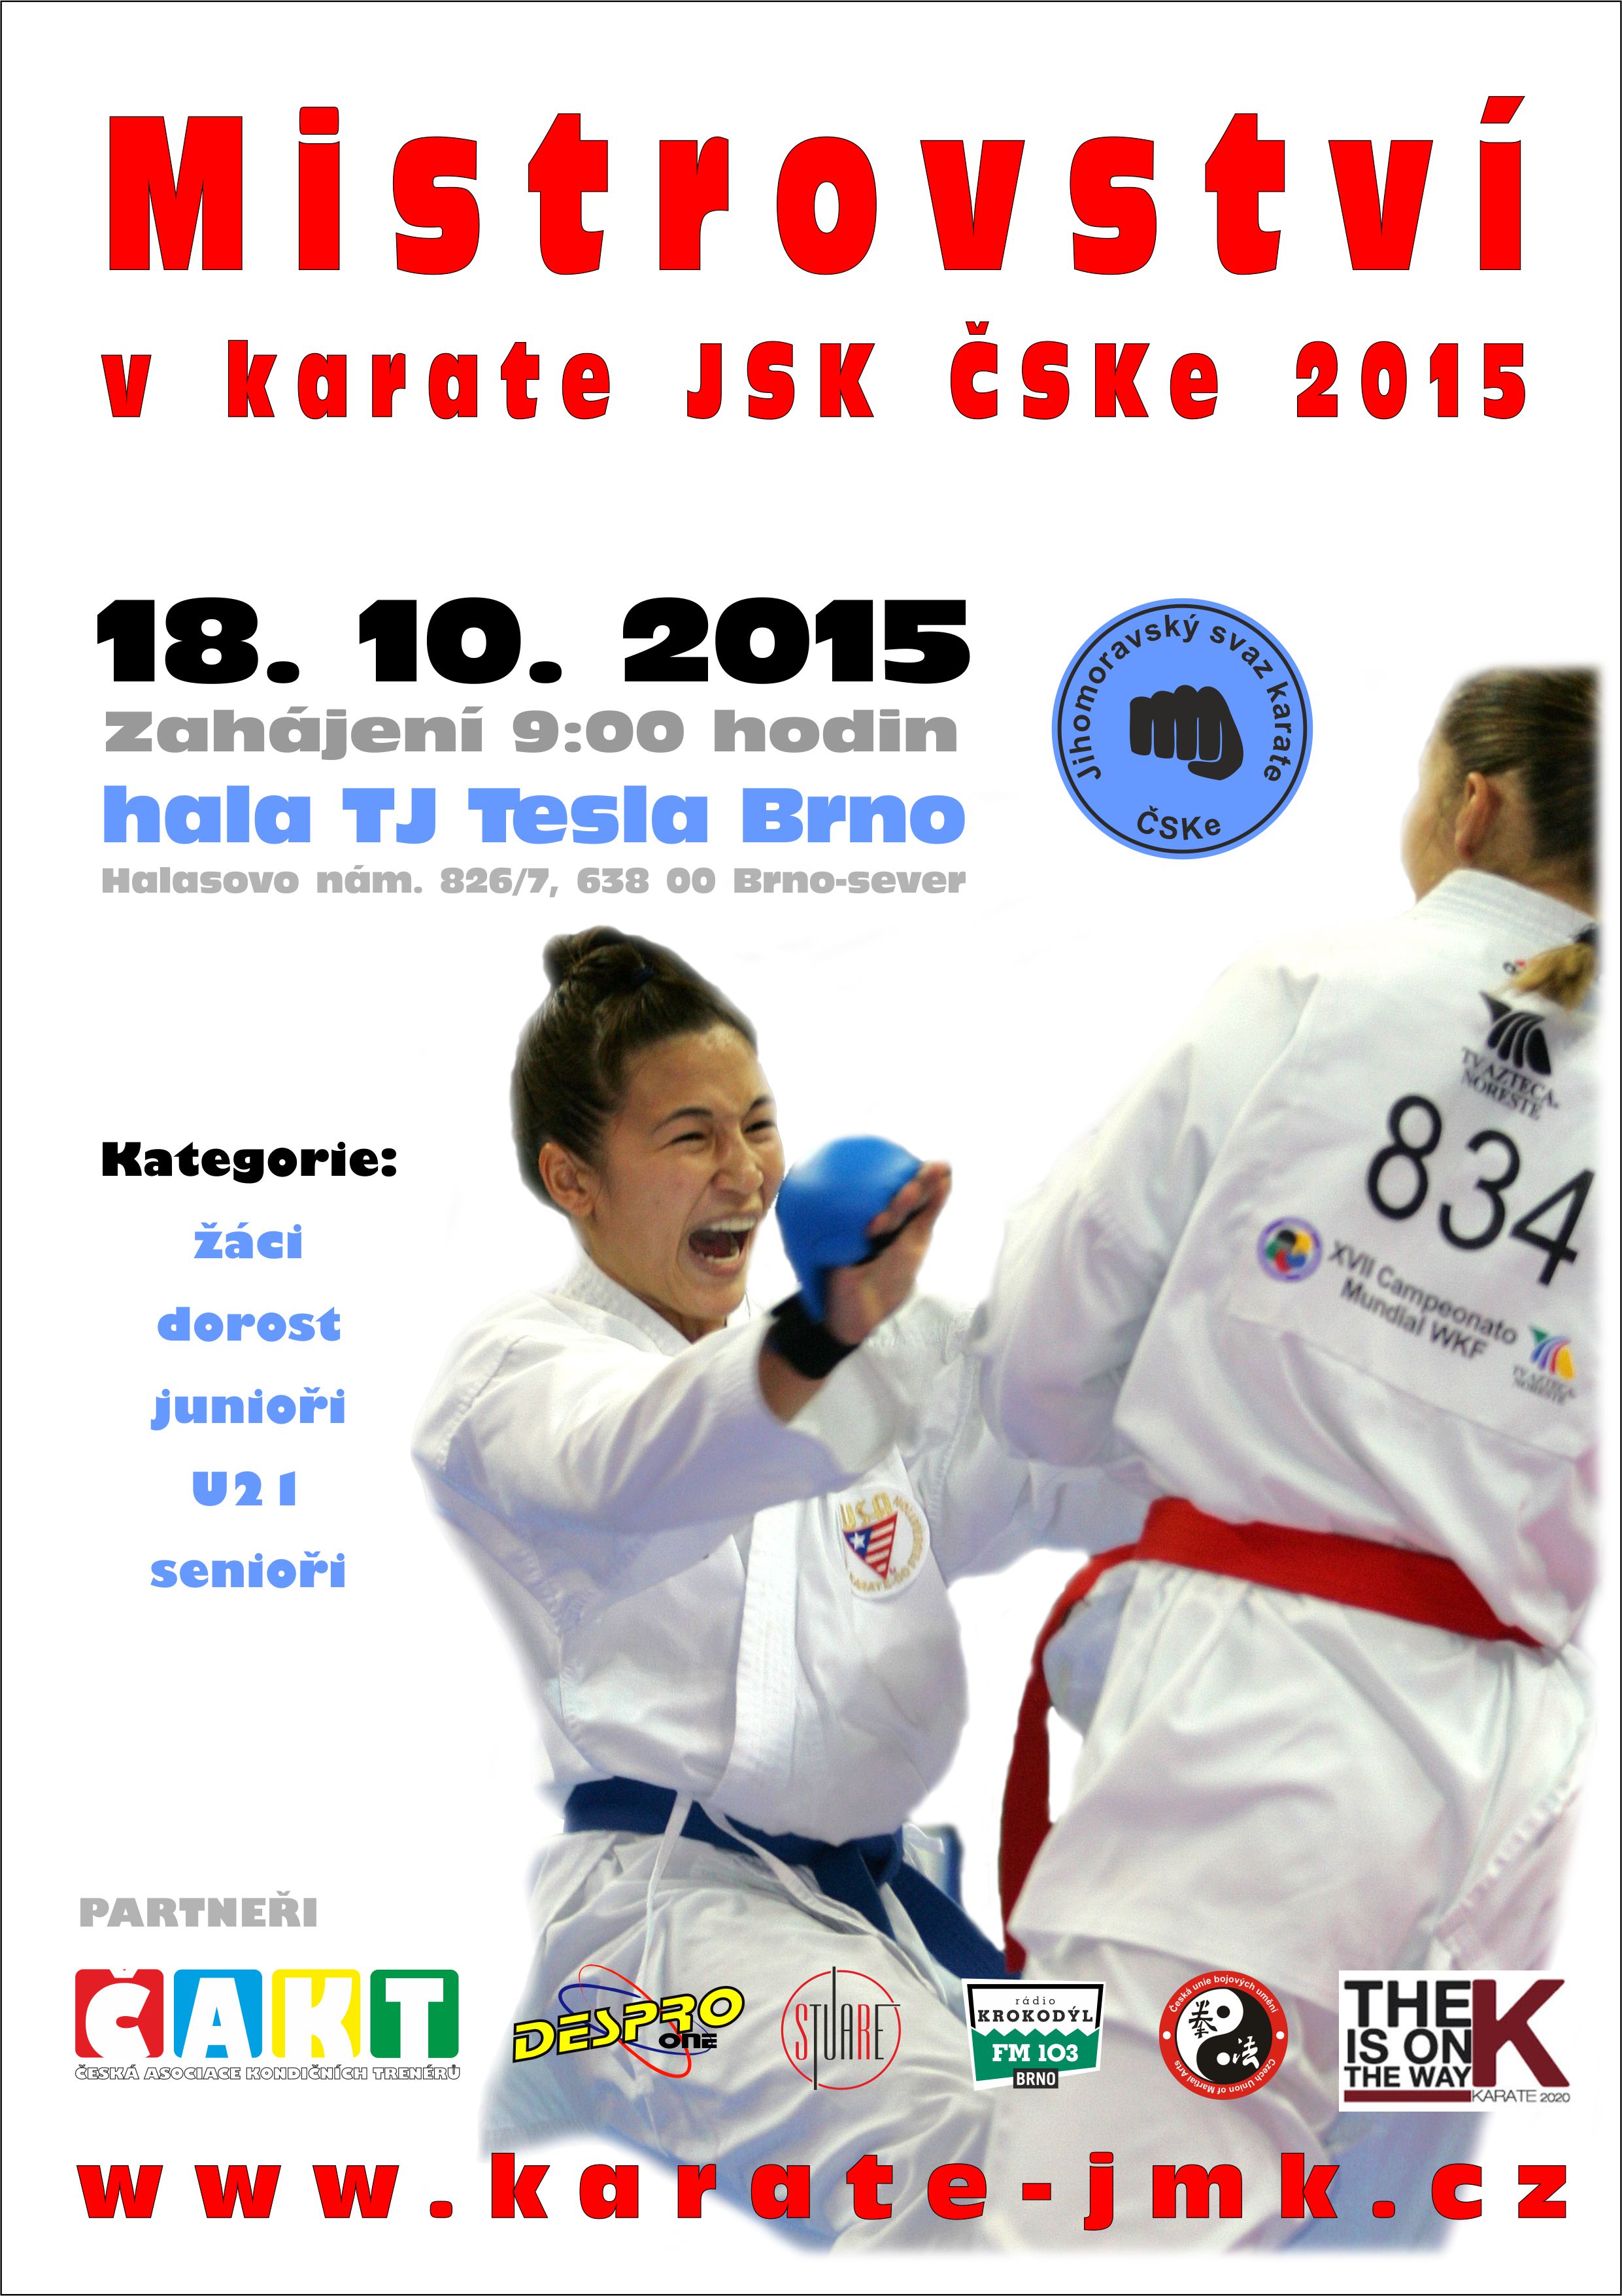 Plakát v Mistrovství JMK v karate JSK ČSKe 2015- oprava